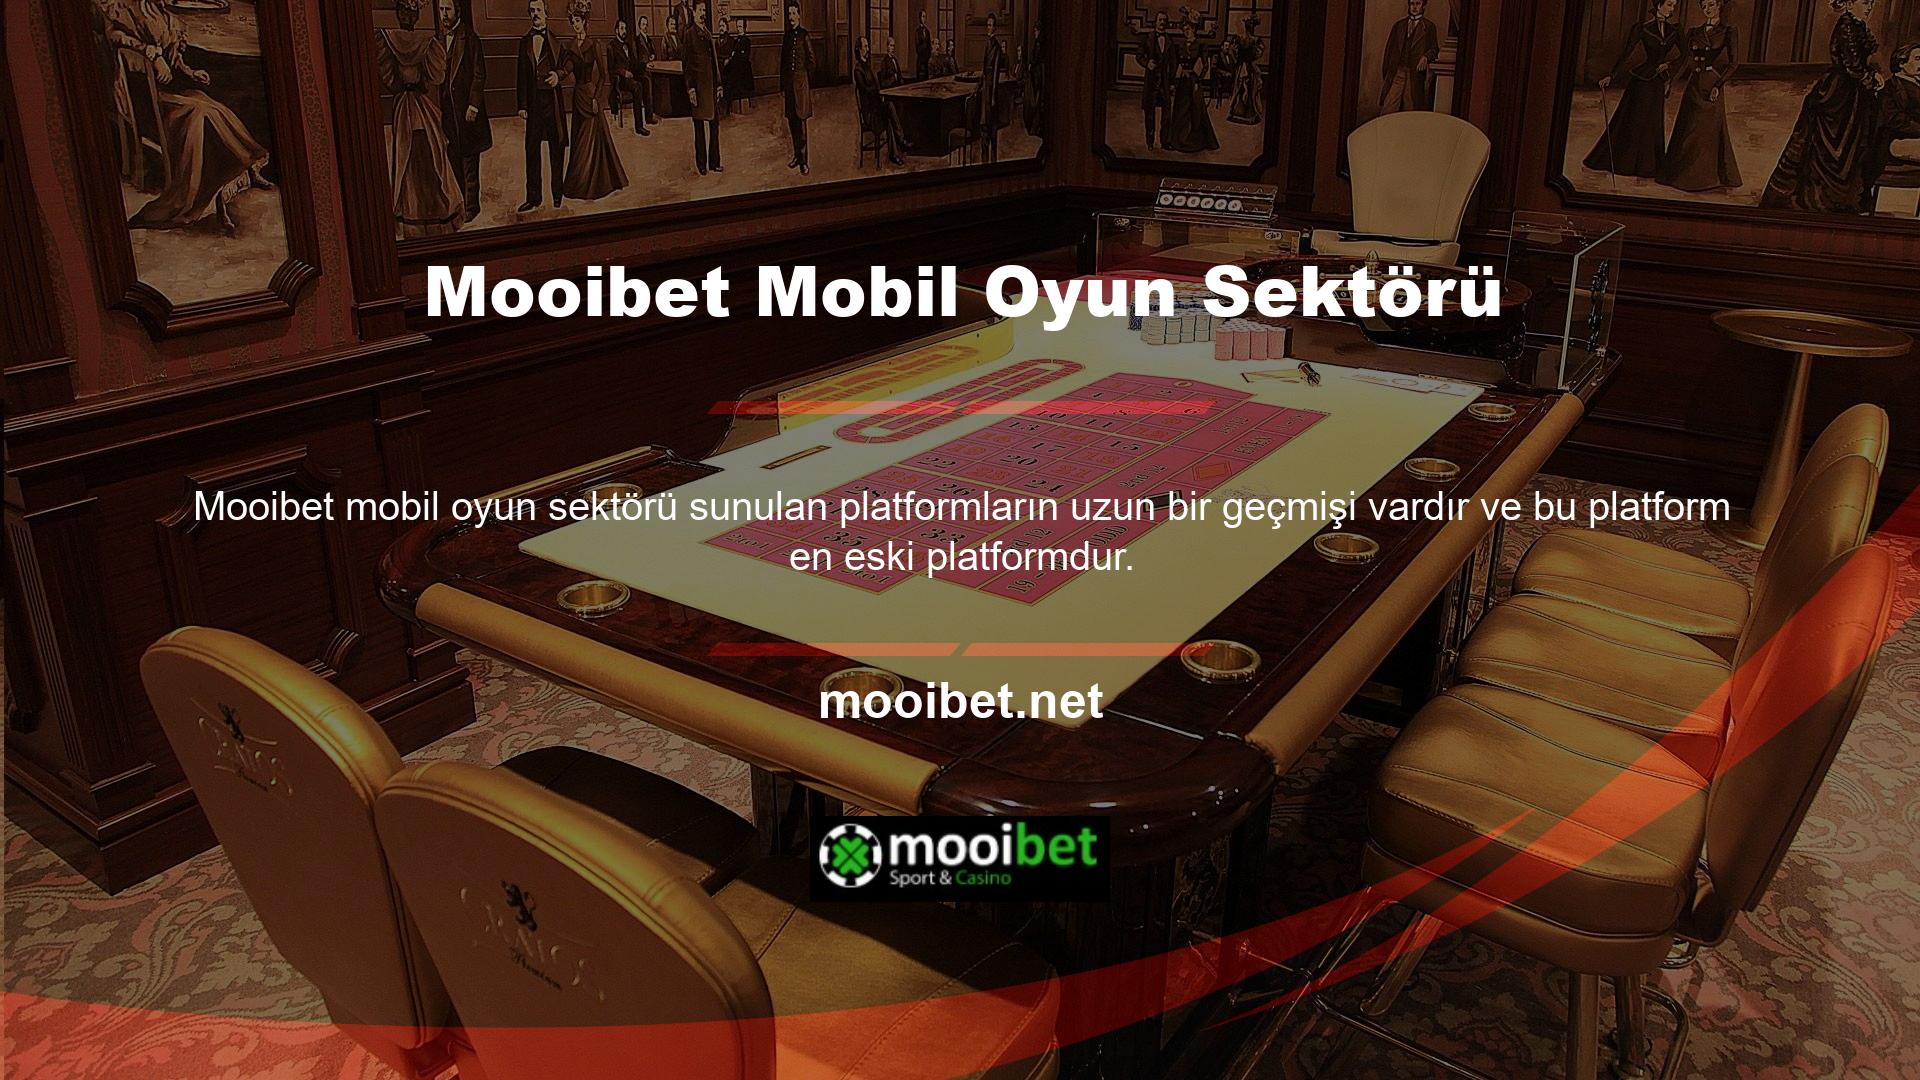 Mooibet erişim sistemi mobil cihazlar üzerinden de uygulanacaktır